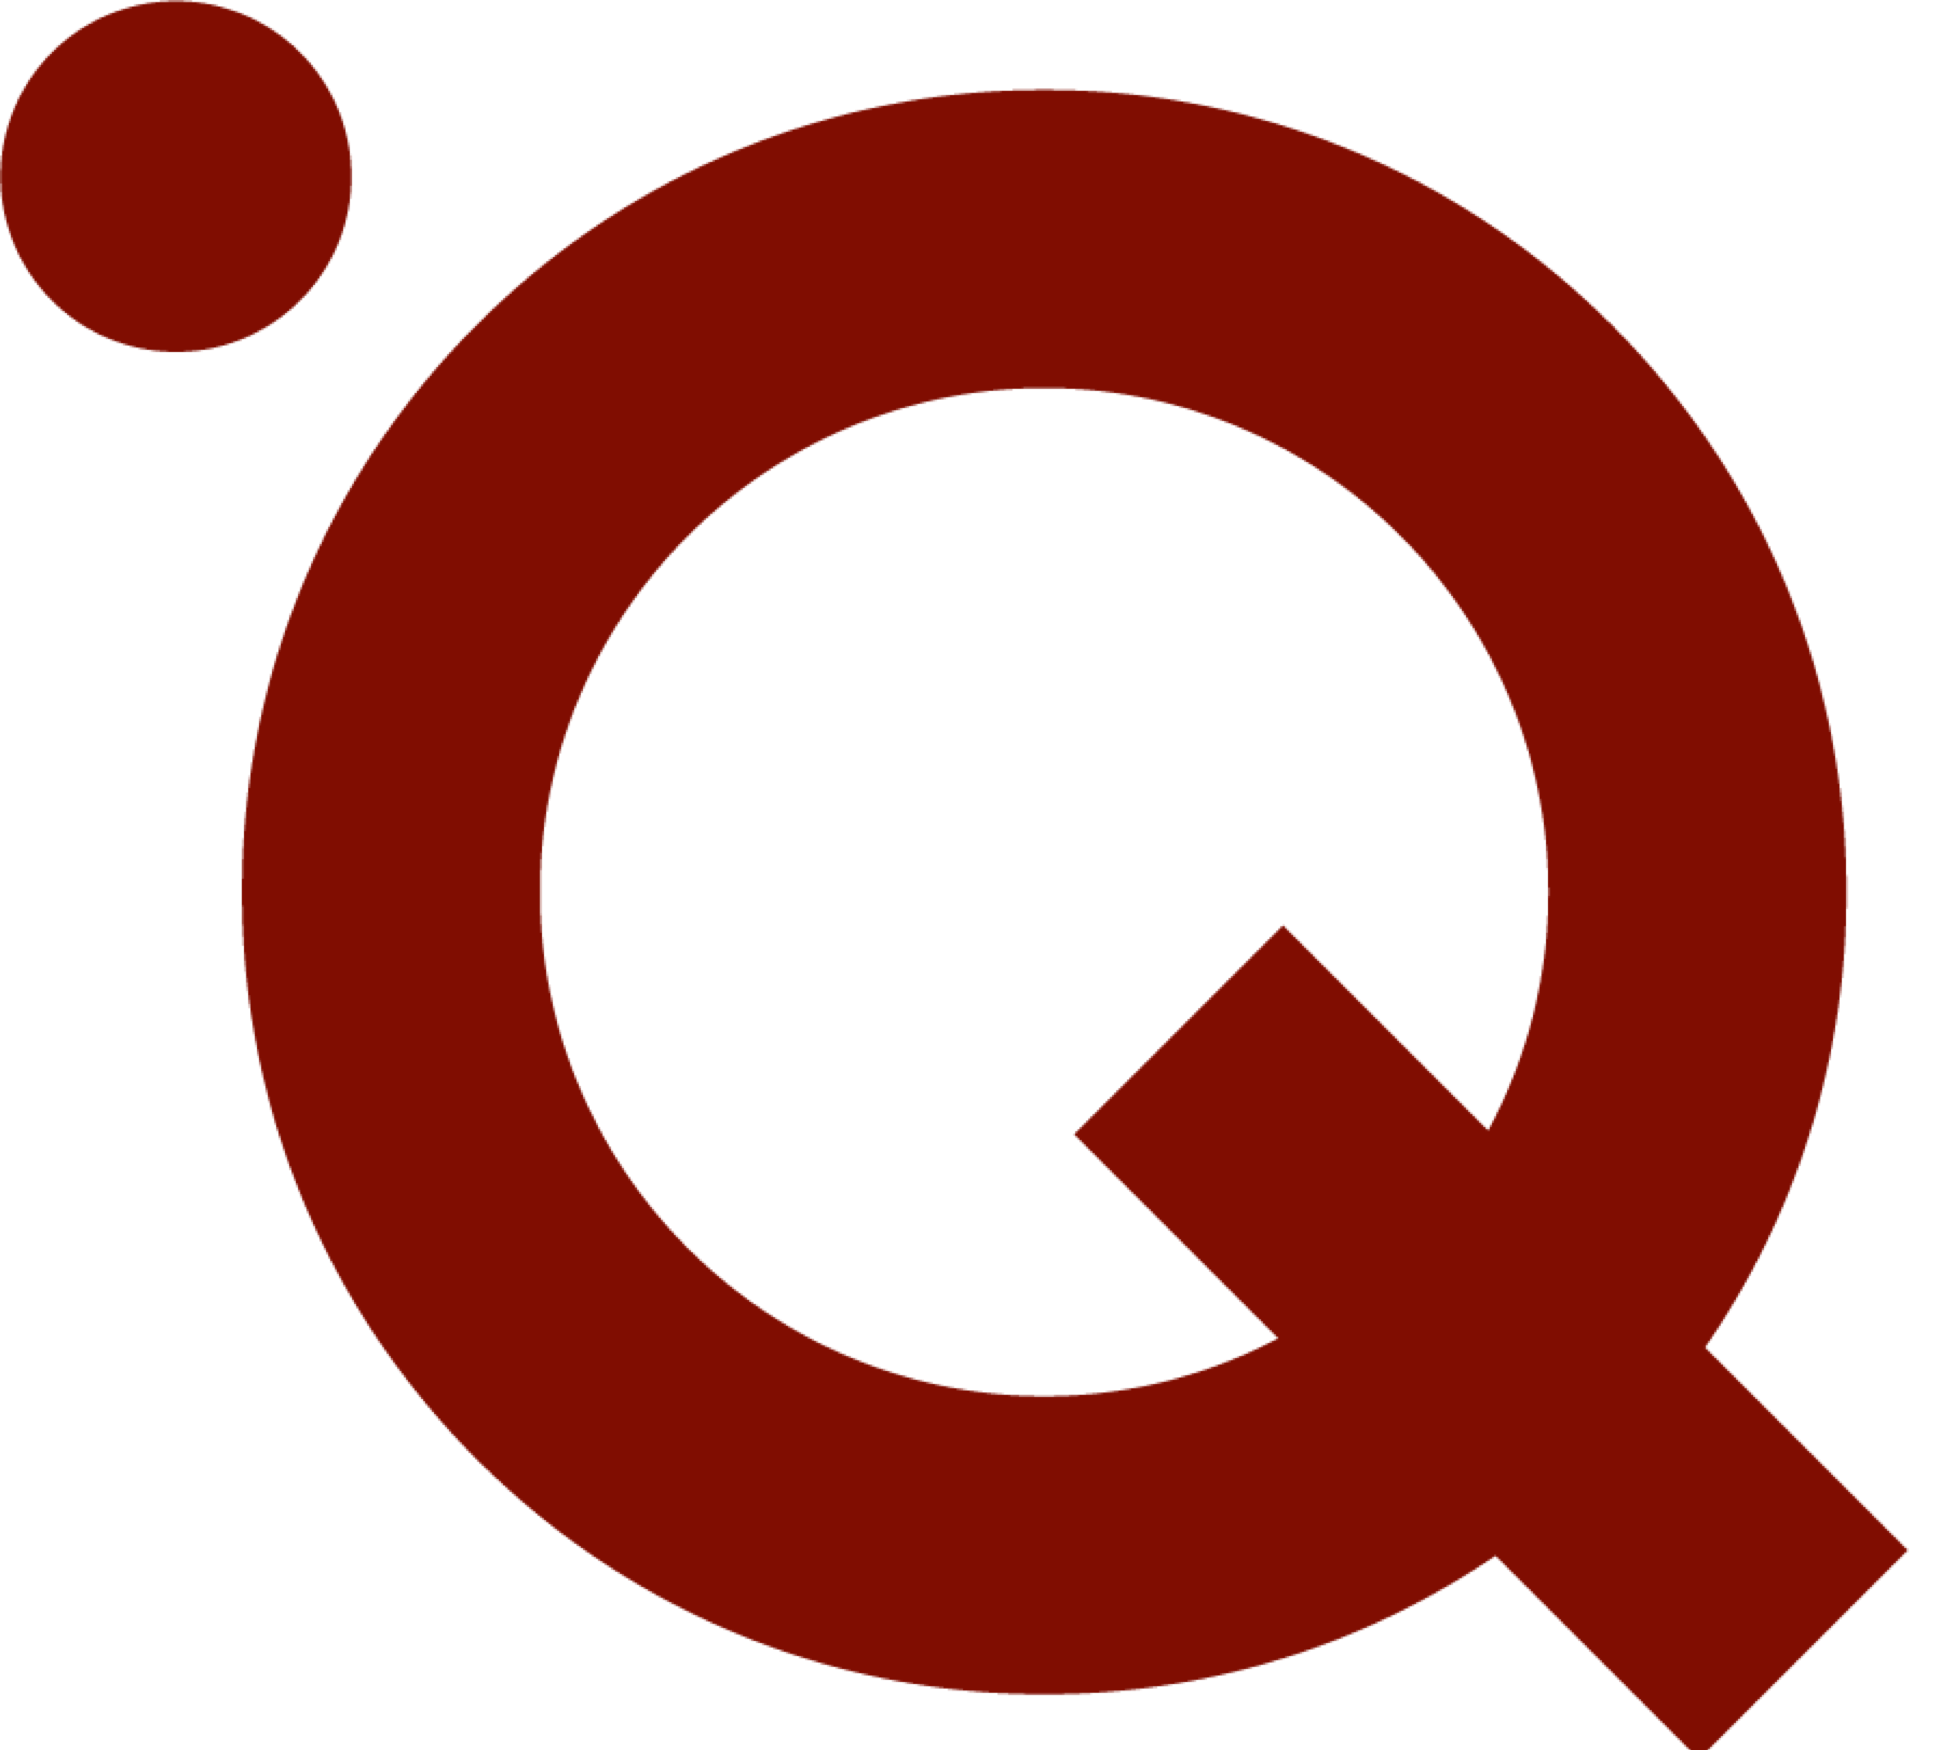 logo-quantum